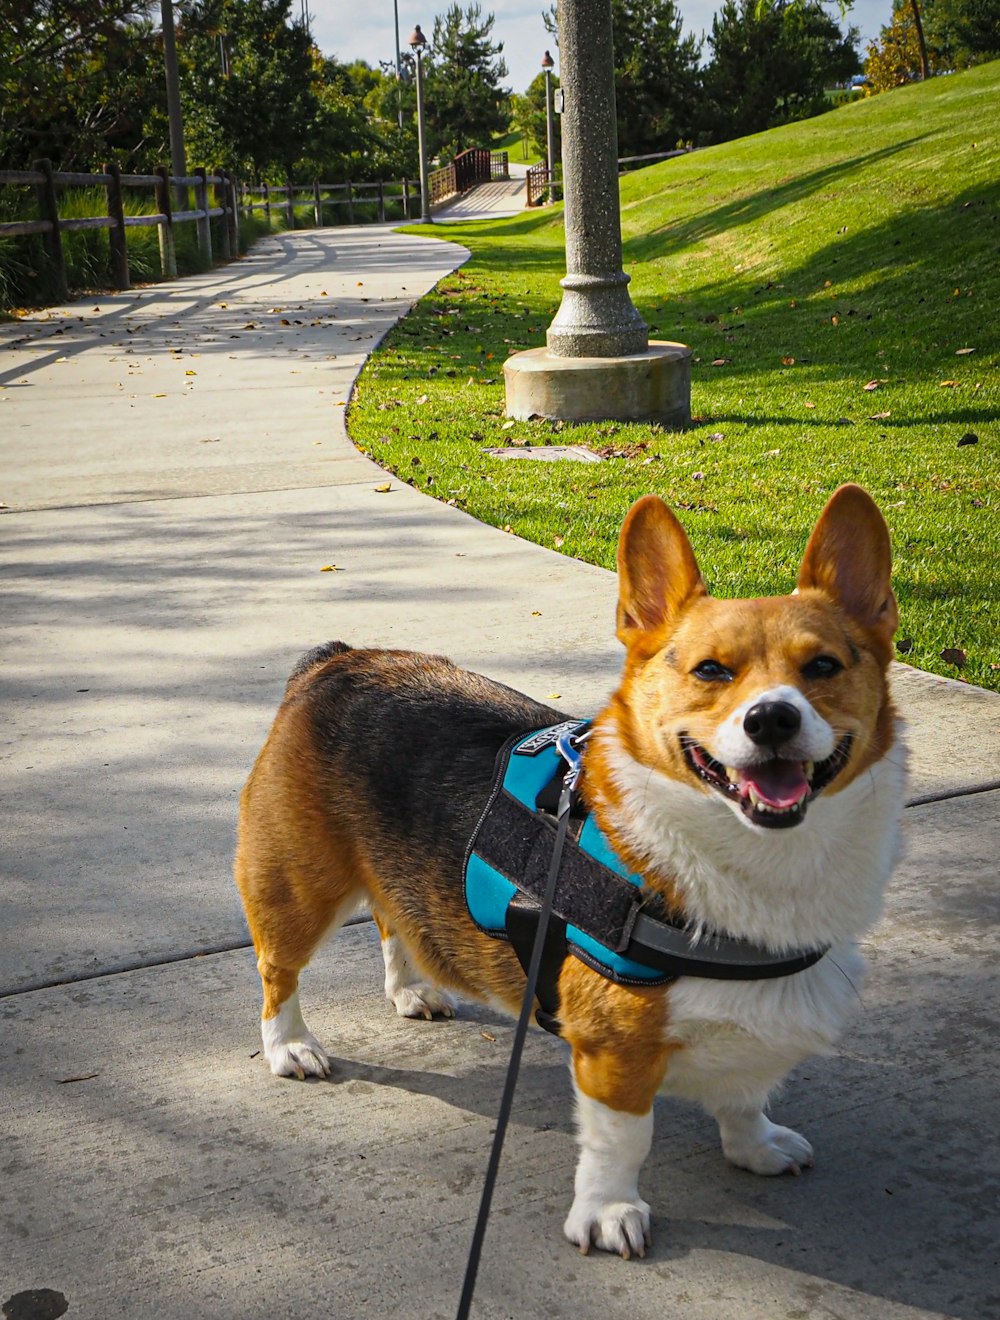 a corgi dog wearing a harness on a leash